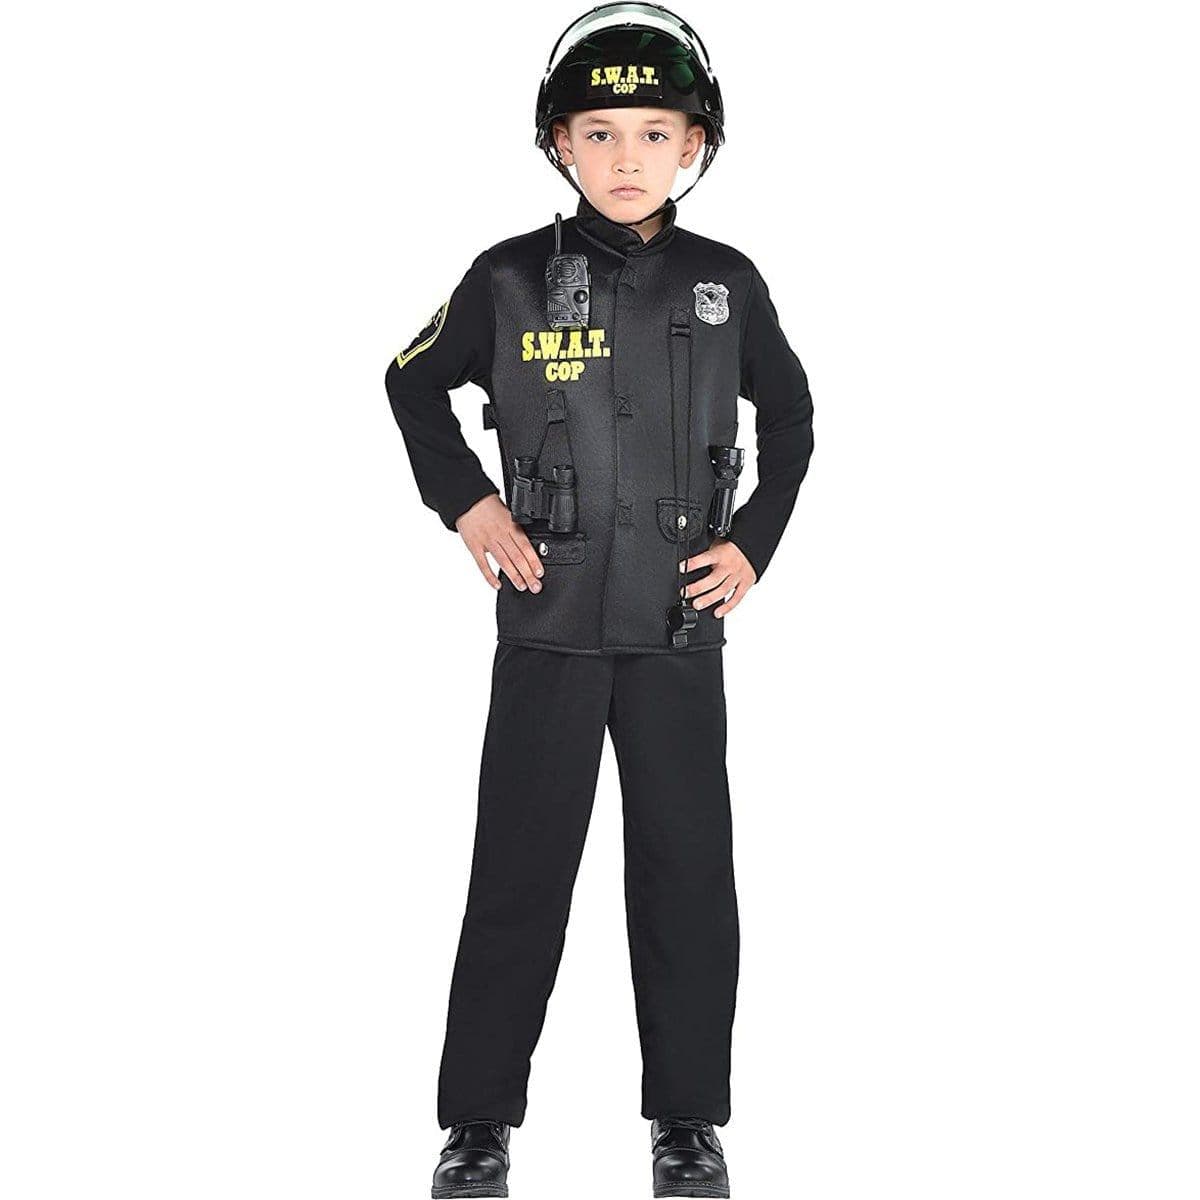 Déguisement Enfant Police Swat 3/4 Ans, déguisement pas cher - Badaboum